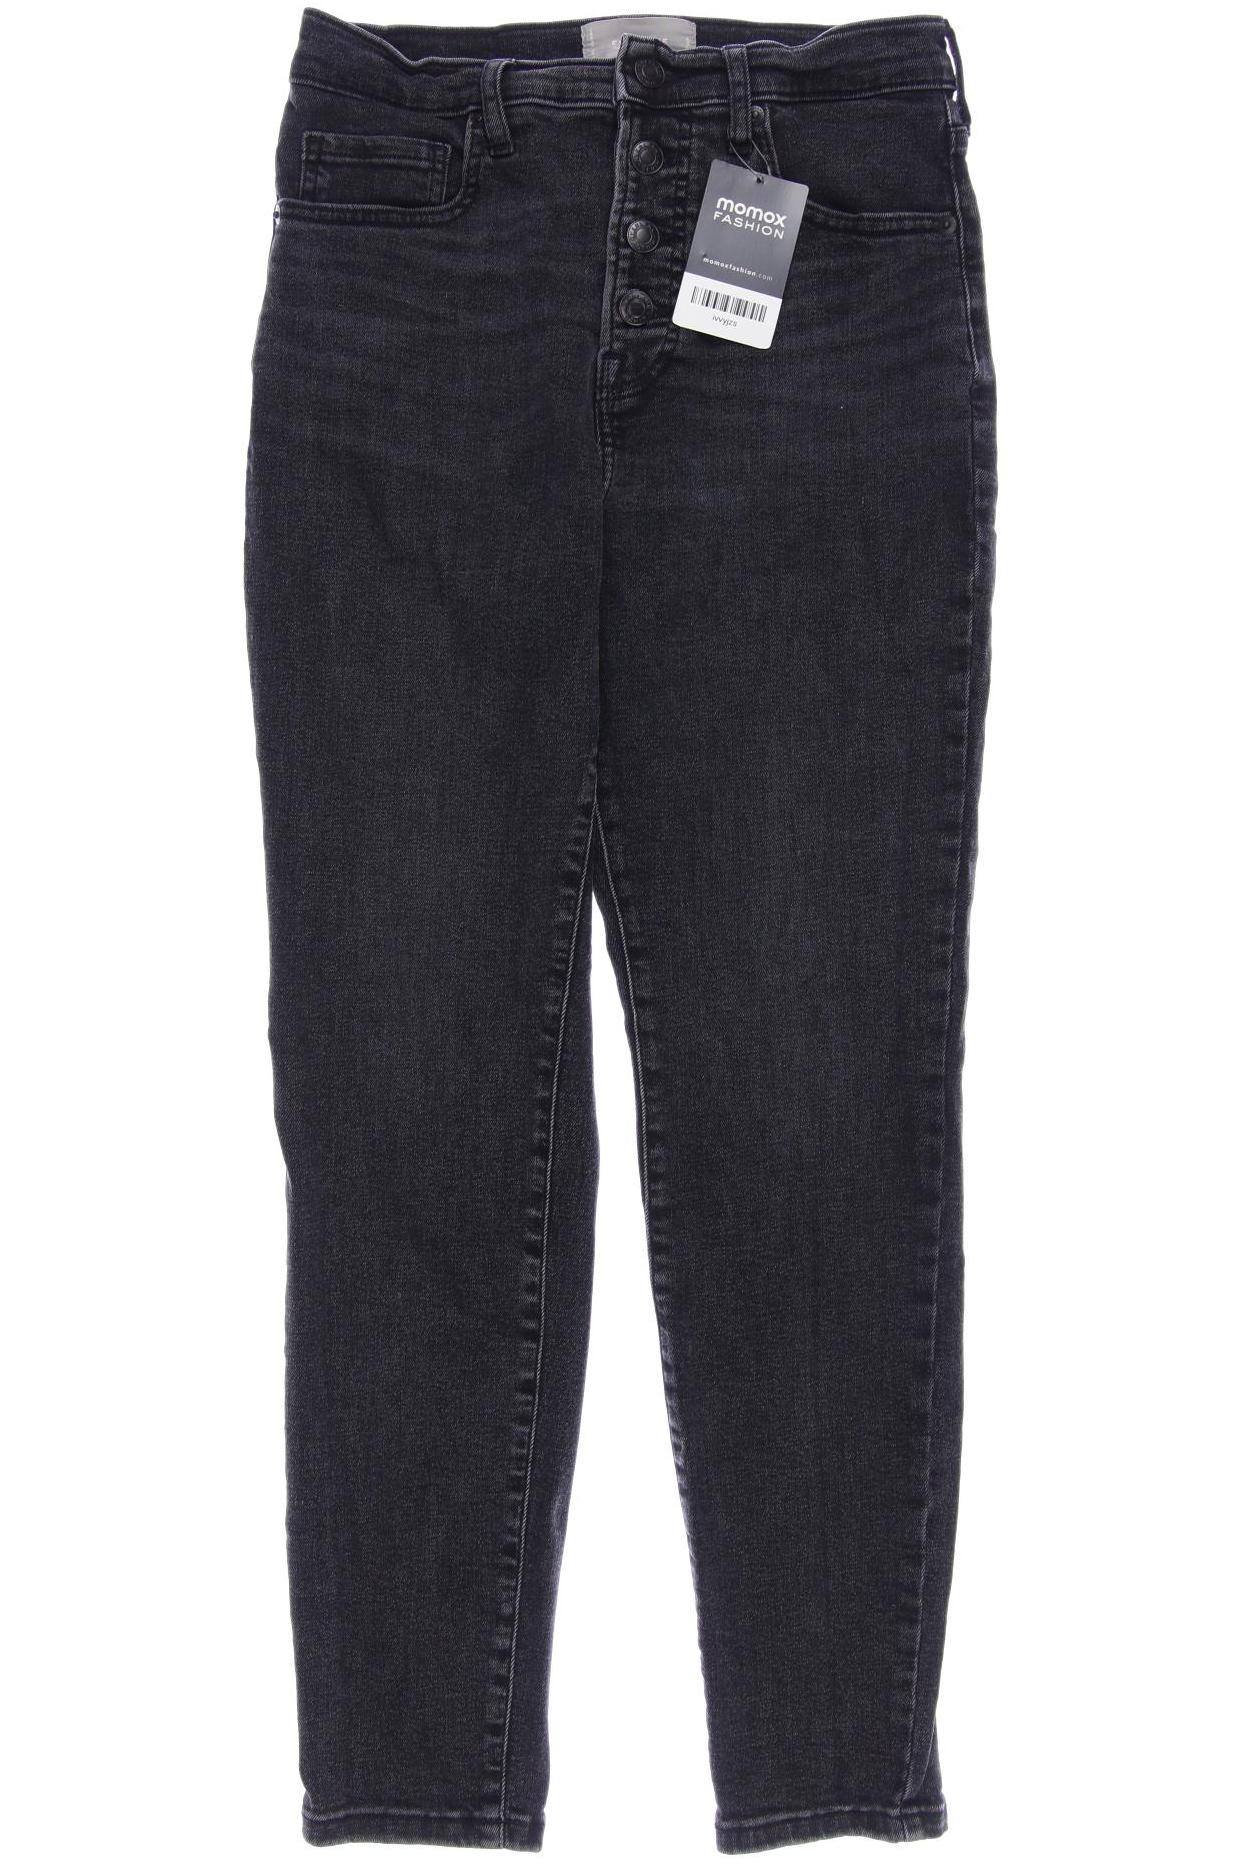 Everlane Damen Jeans, schwarz, Gr. 38 von Everlane